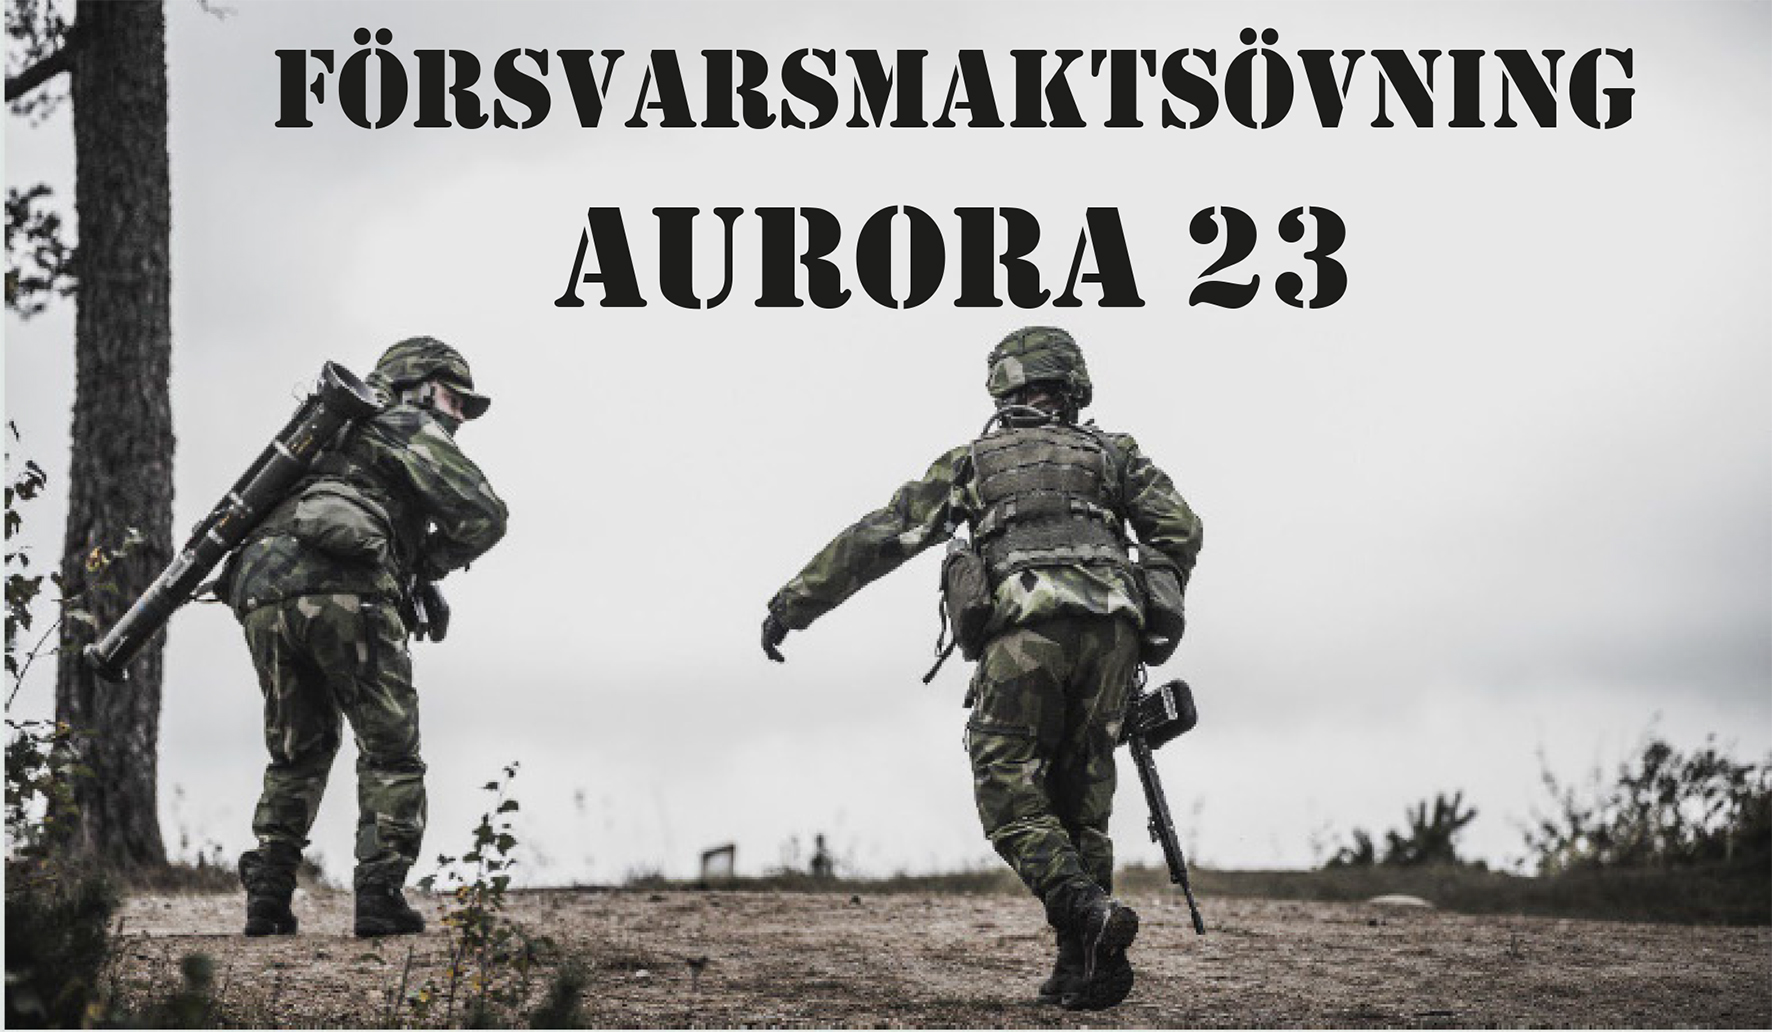 Två soldater springer på öppet fält. Text: Försvarsmaktsövning Aurora 23